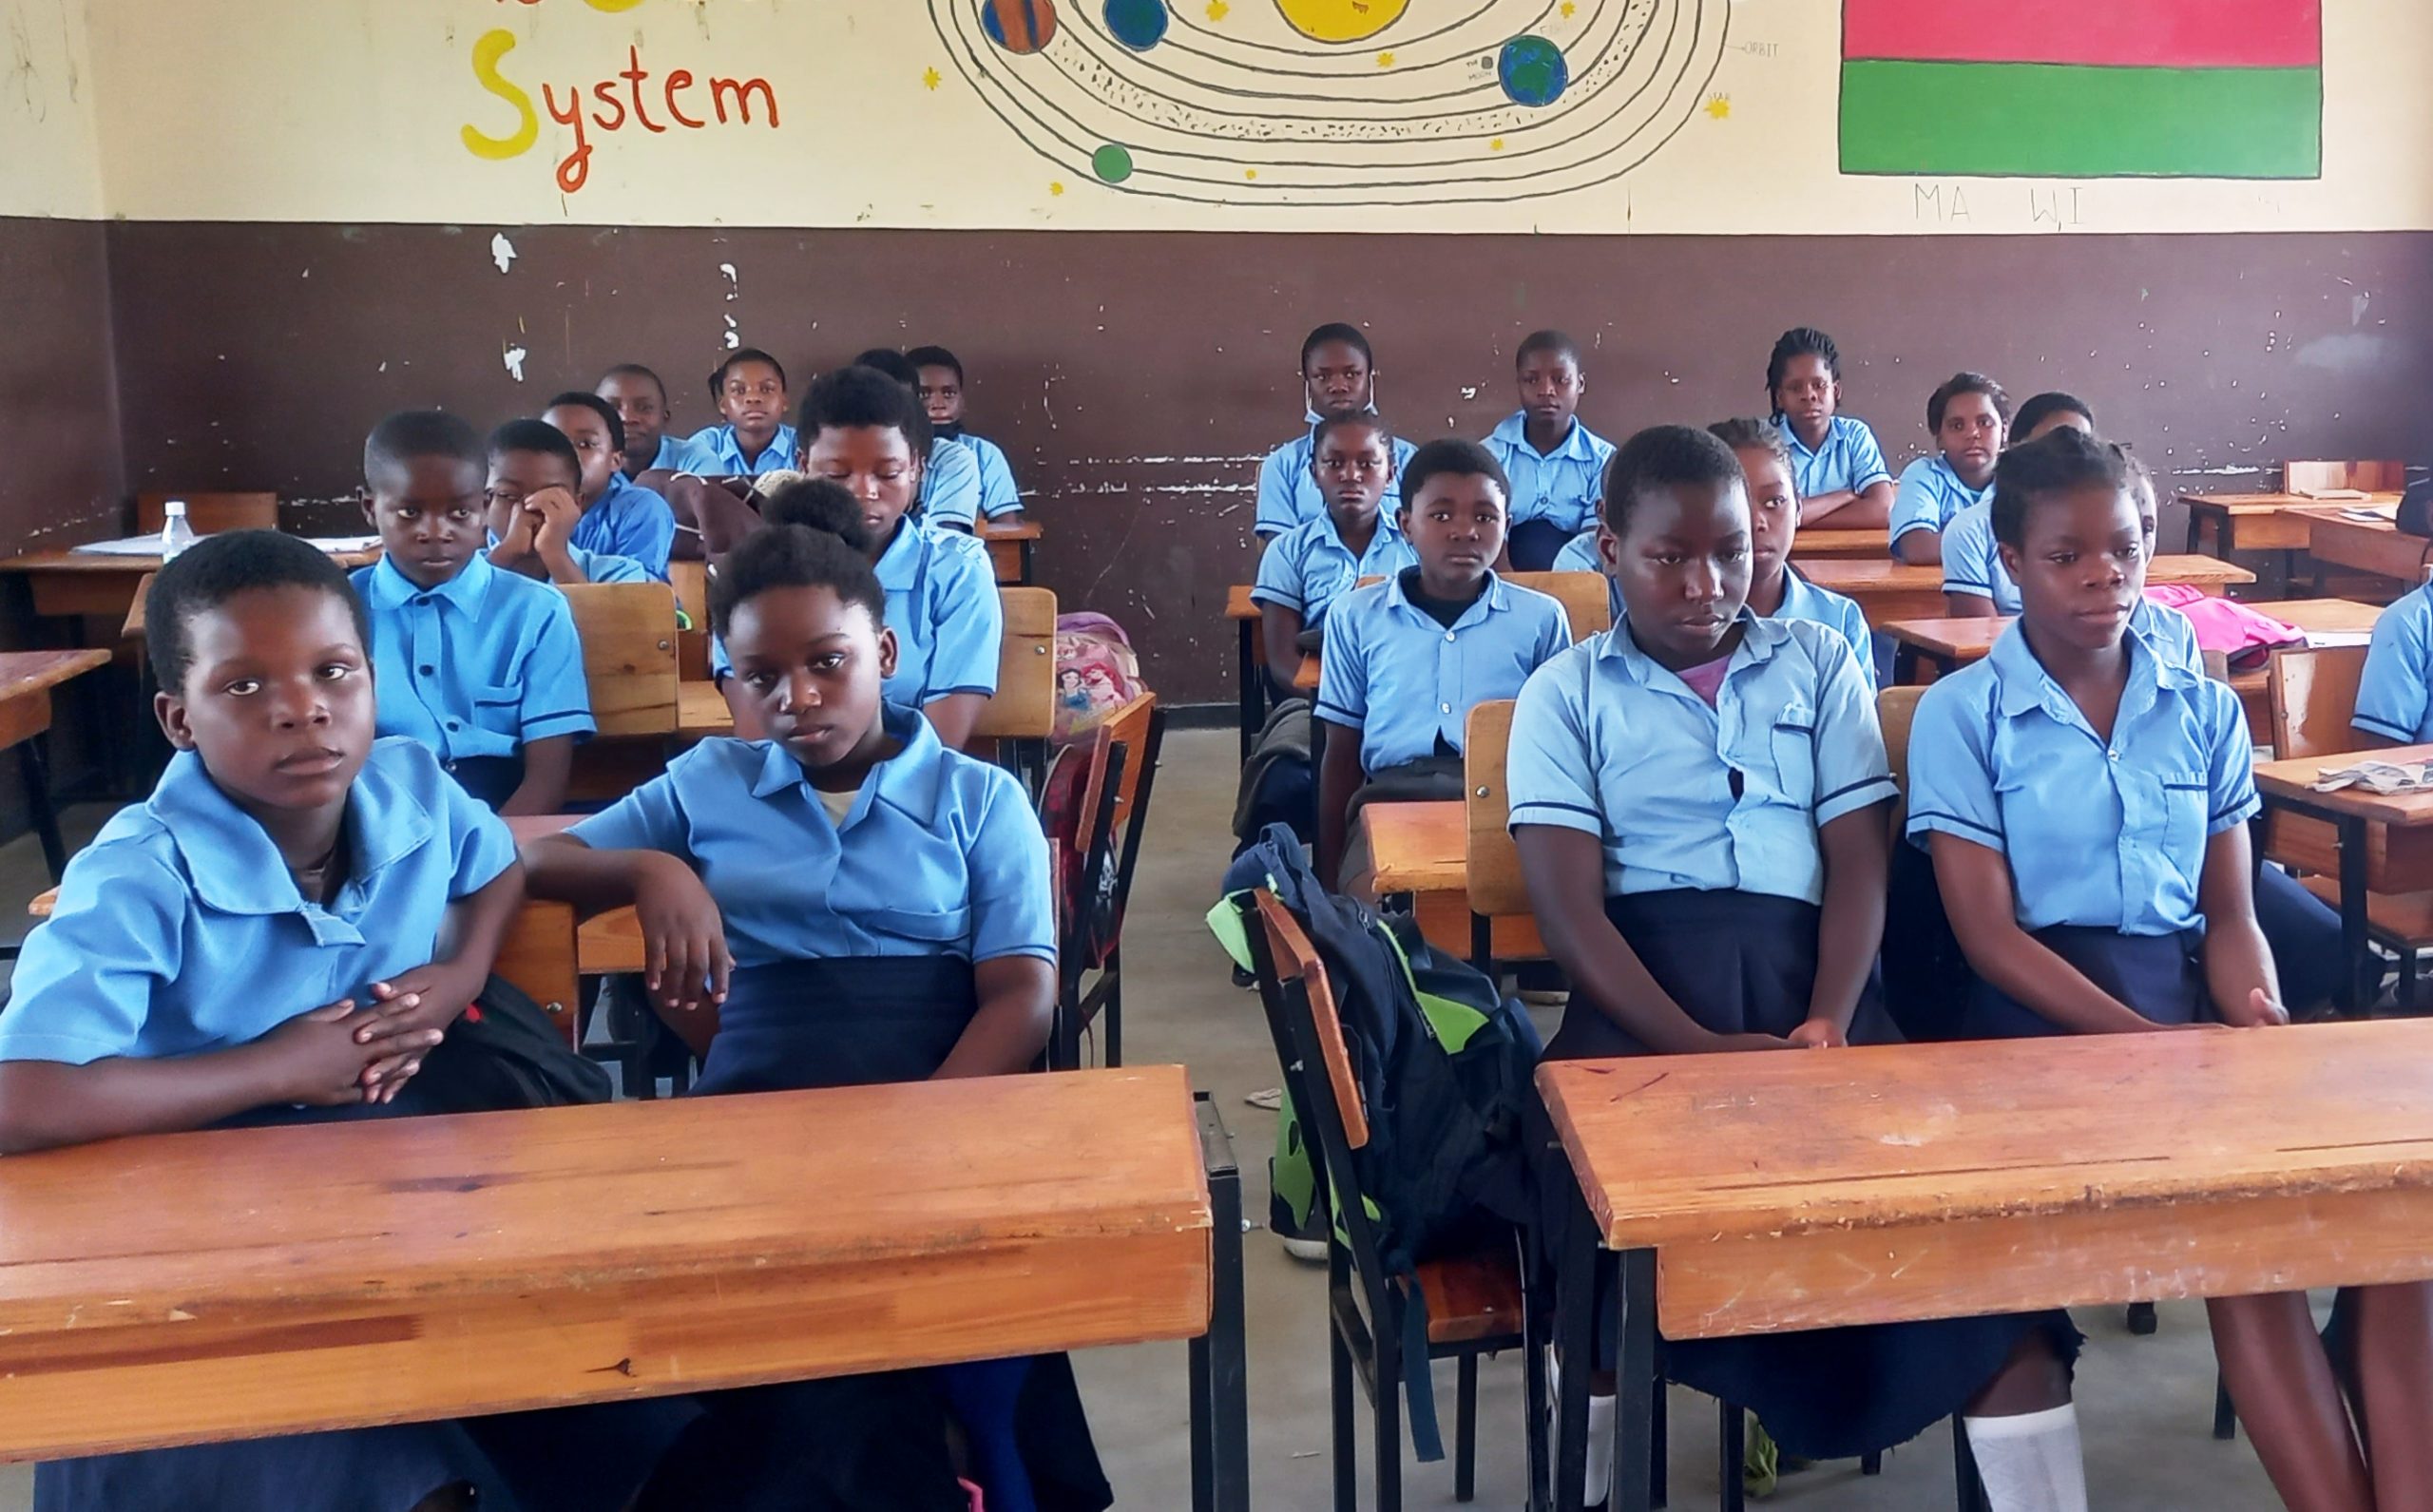 Veintidós niñas desafían las estadísticas escolares en Malaui